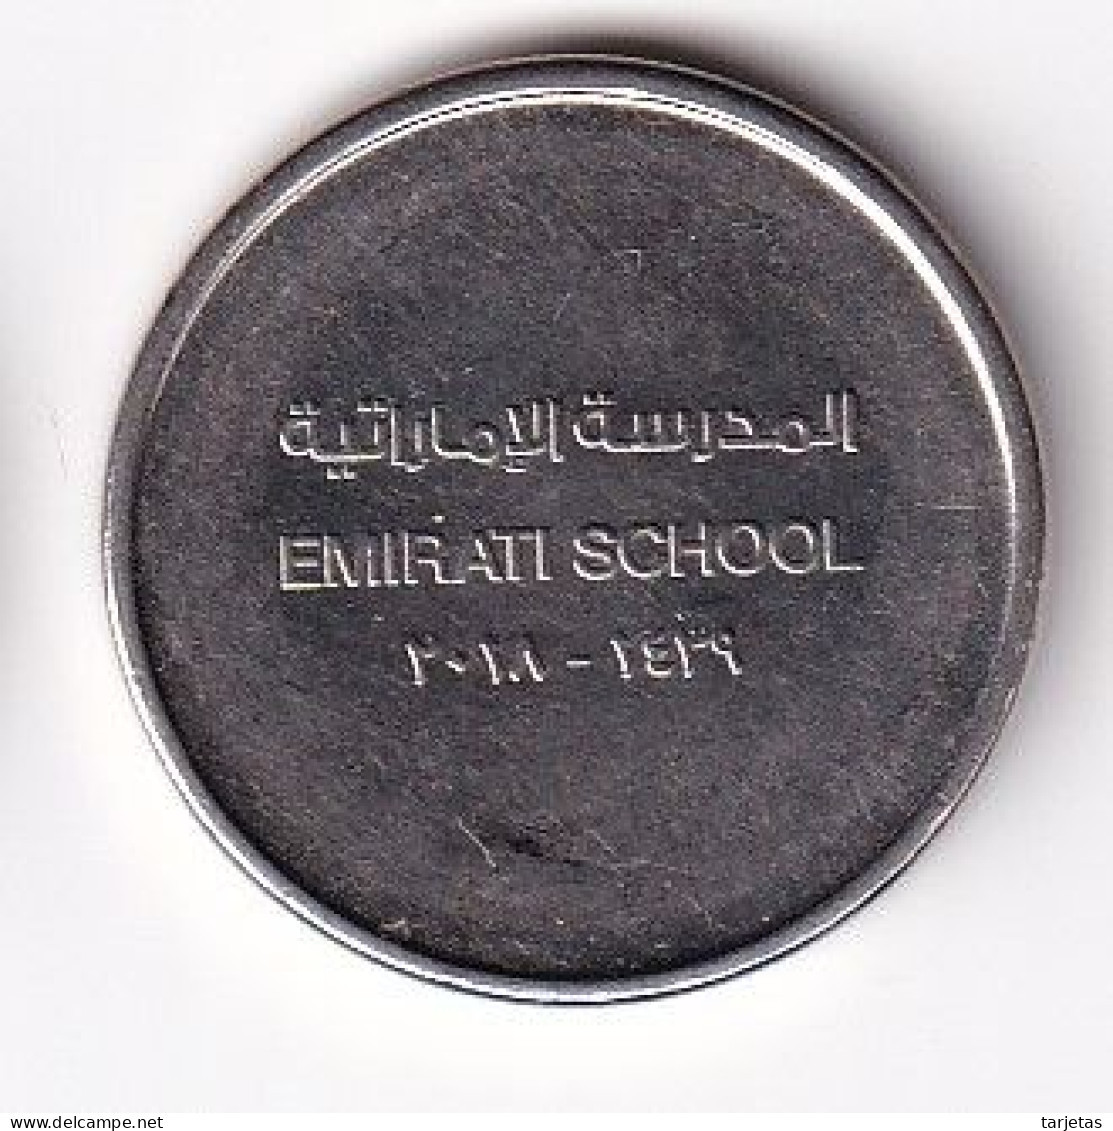 MONEDA DE EMIRATOS ARABES DE 1 DIRHAM DEL AÑO 2018 - EMIRATI SCHOOL (COIN) - Verenigde Arabische Emiraten